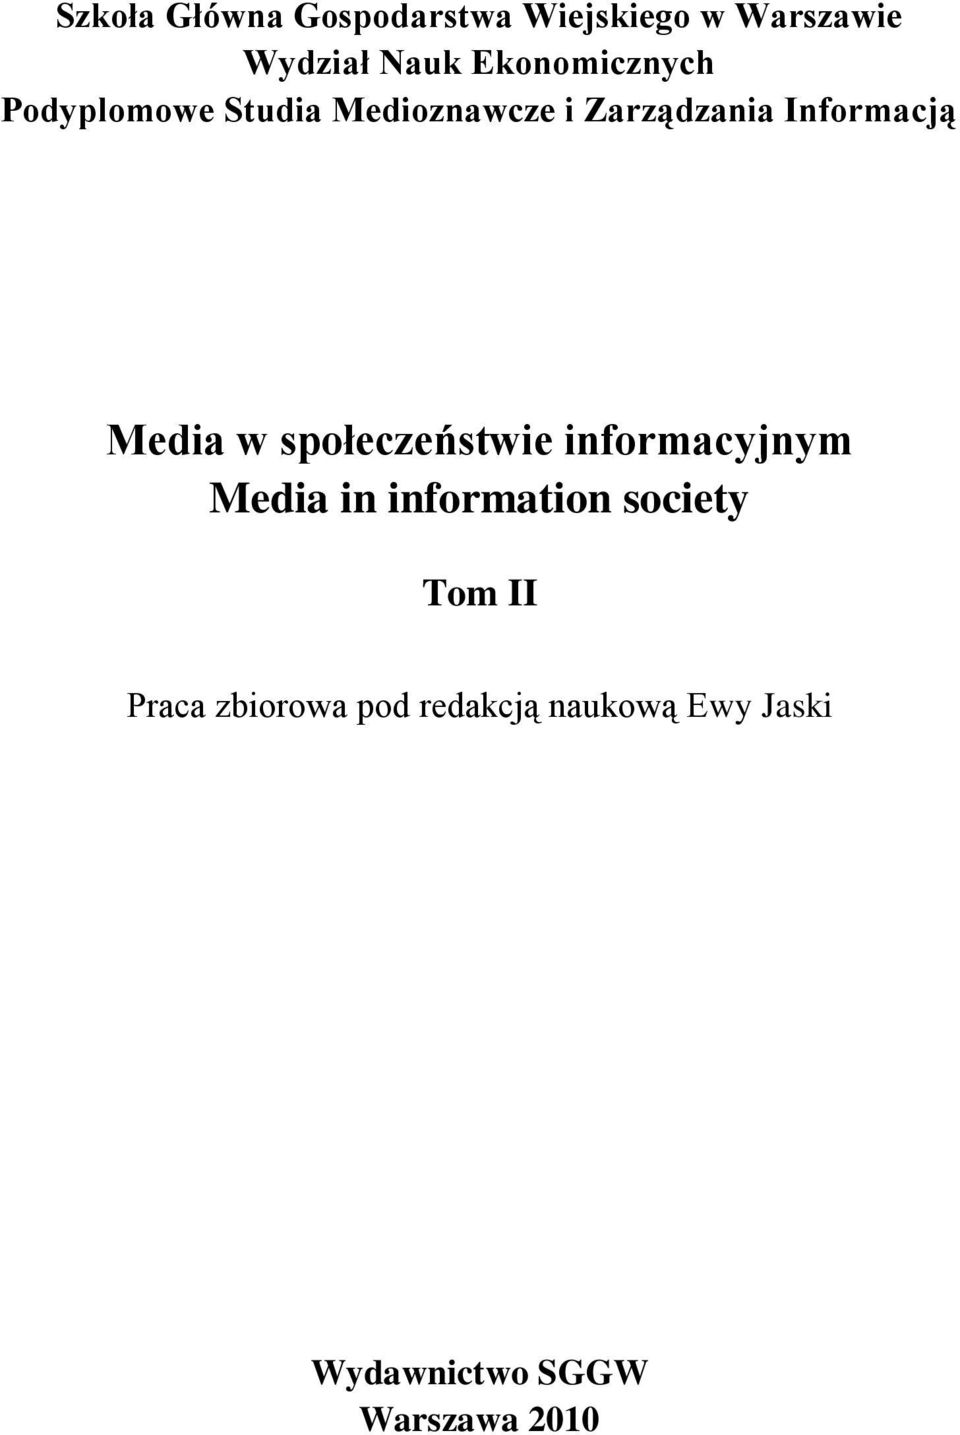 Media w społeczeństwie informacyjnym Media in information society Tom